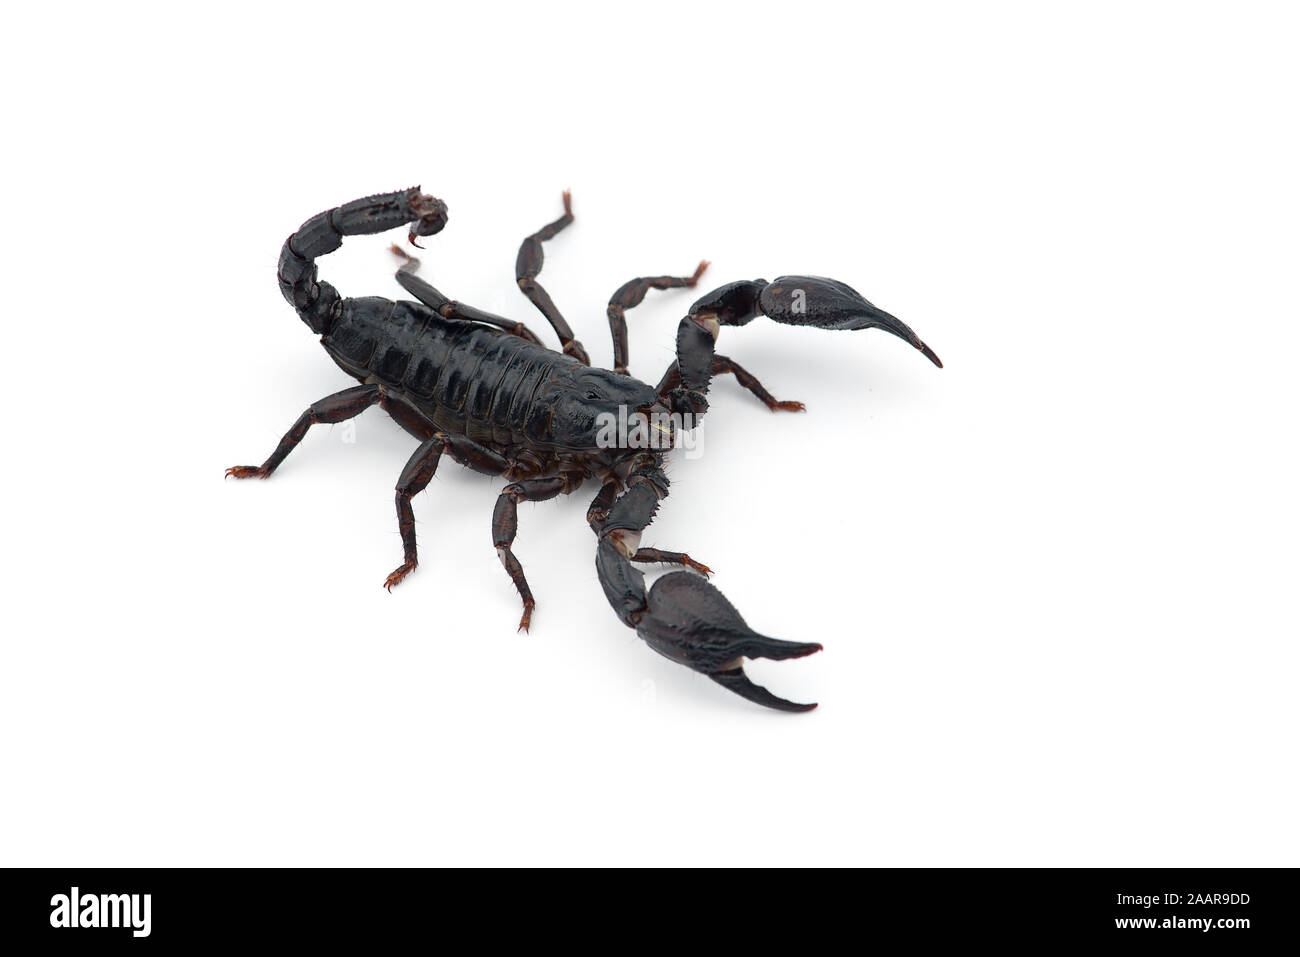 Le venin de scorpion africain isolé sur fond blanc Banque D'Images